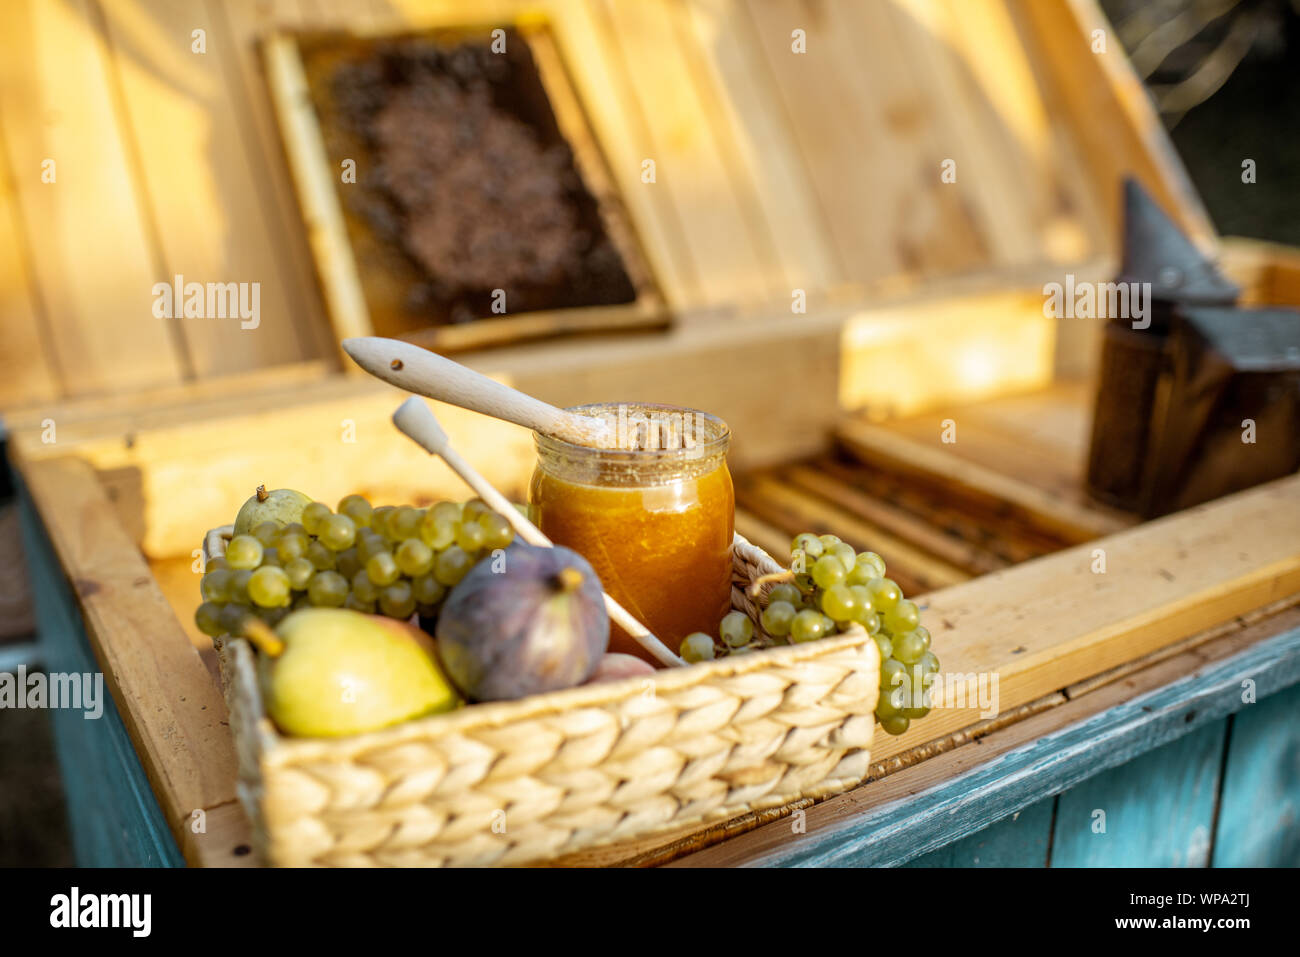 Composizione di frutti dolci e jar con del miele per alveare con il nido d'ape sullo sfondo Foto Stock